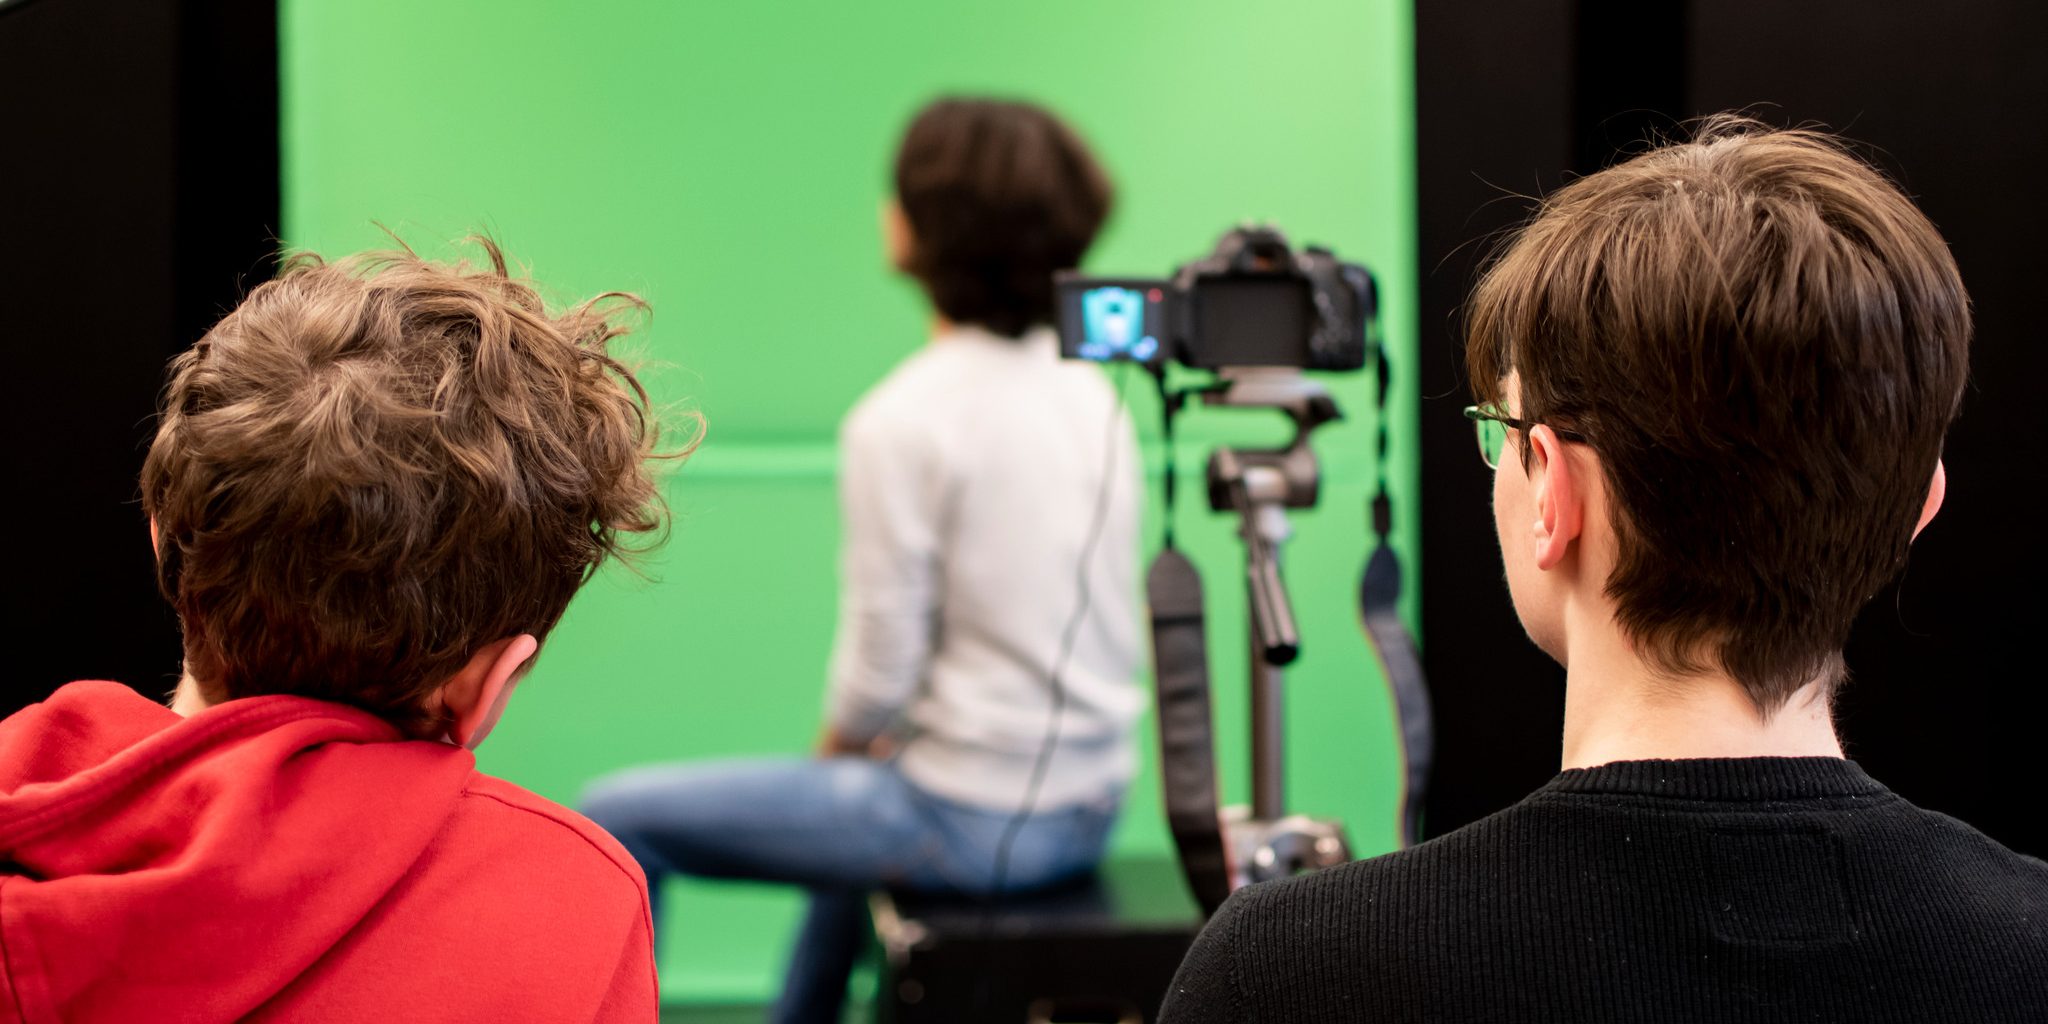 Tre elever står i en studio med en grön bakgrund. En kamera filmar en person.